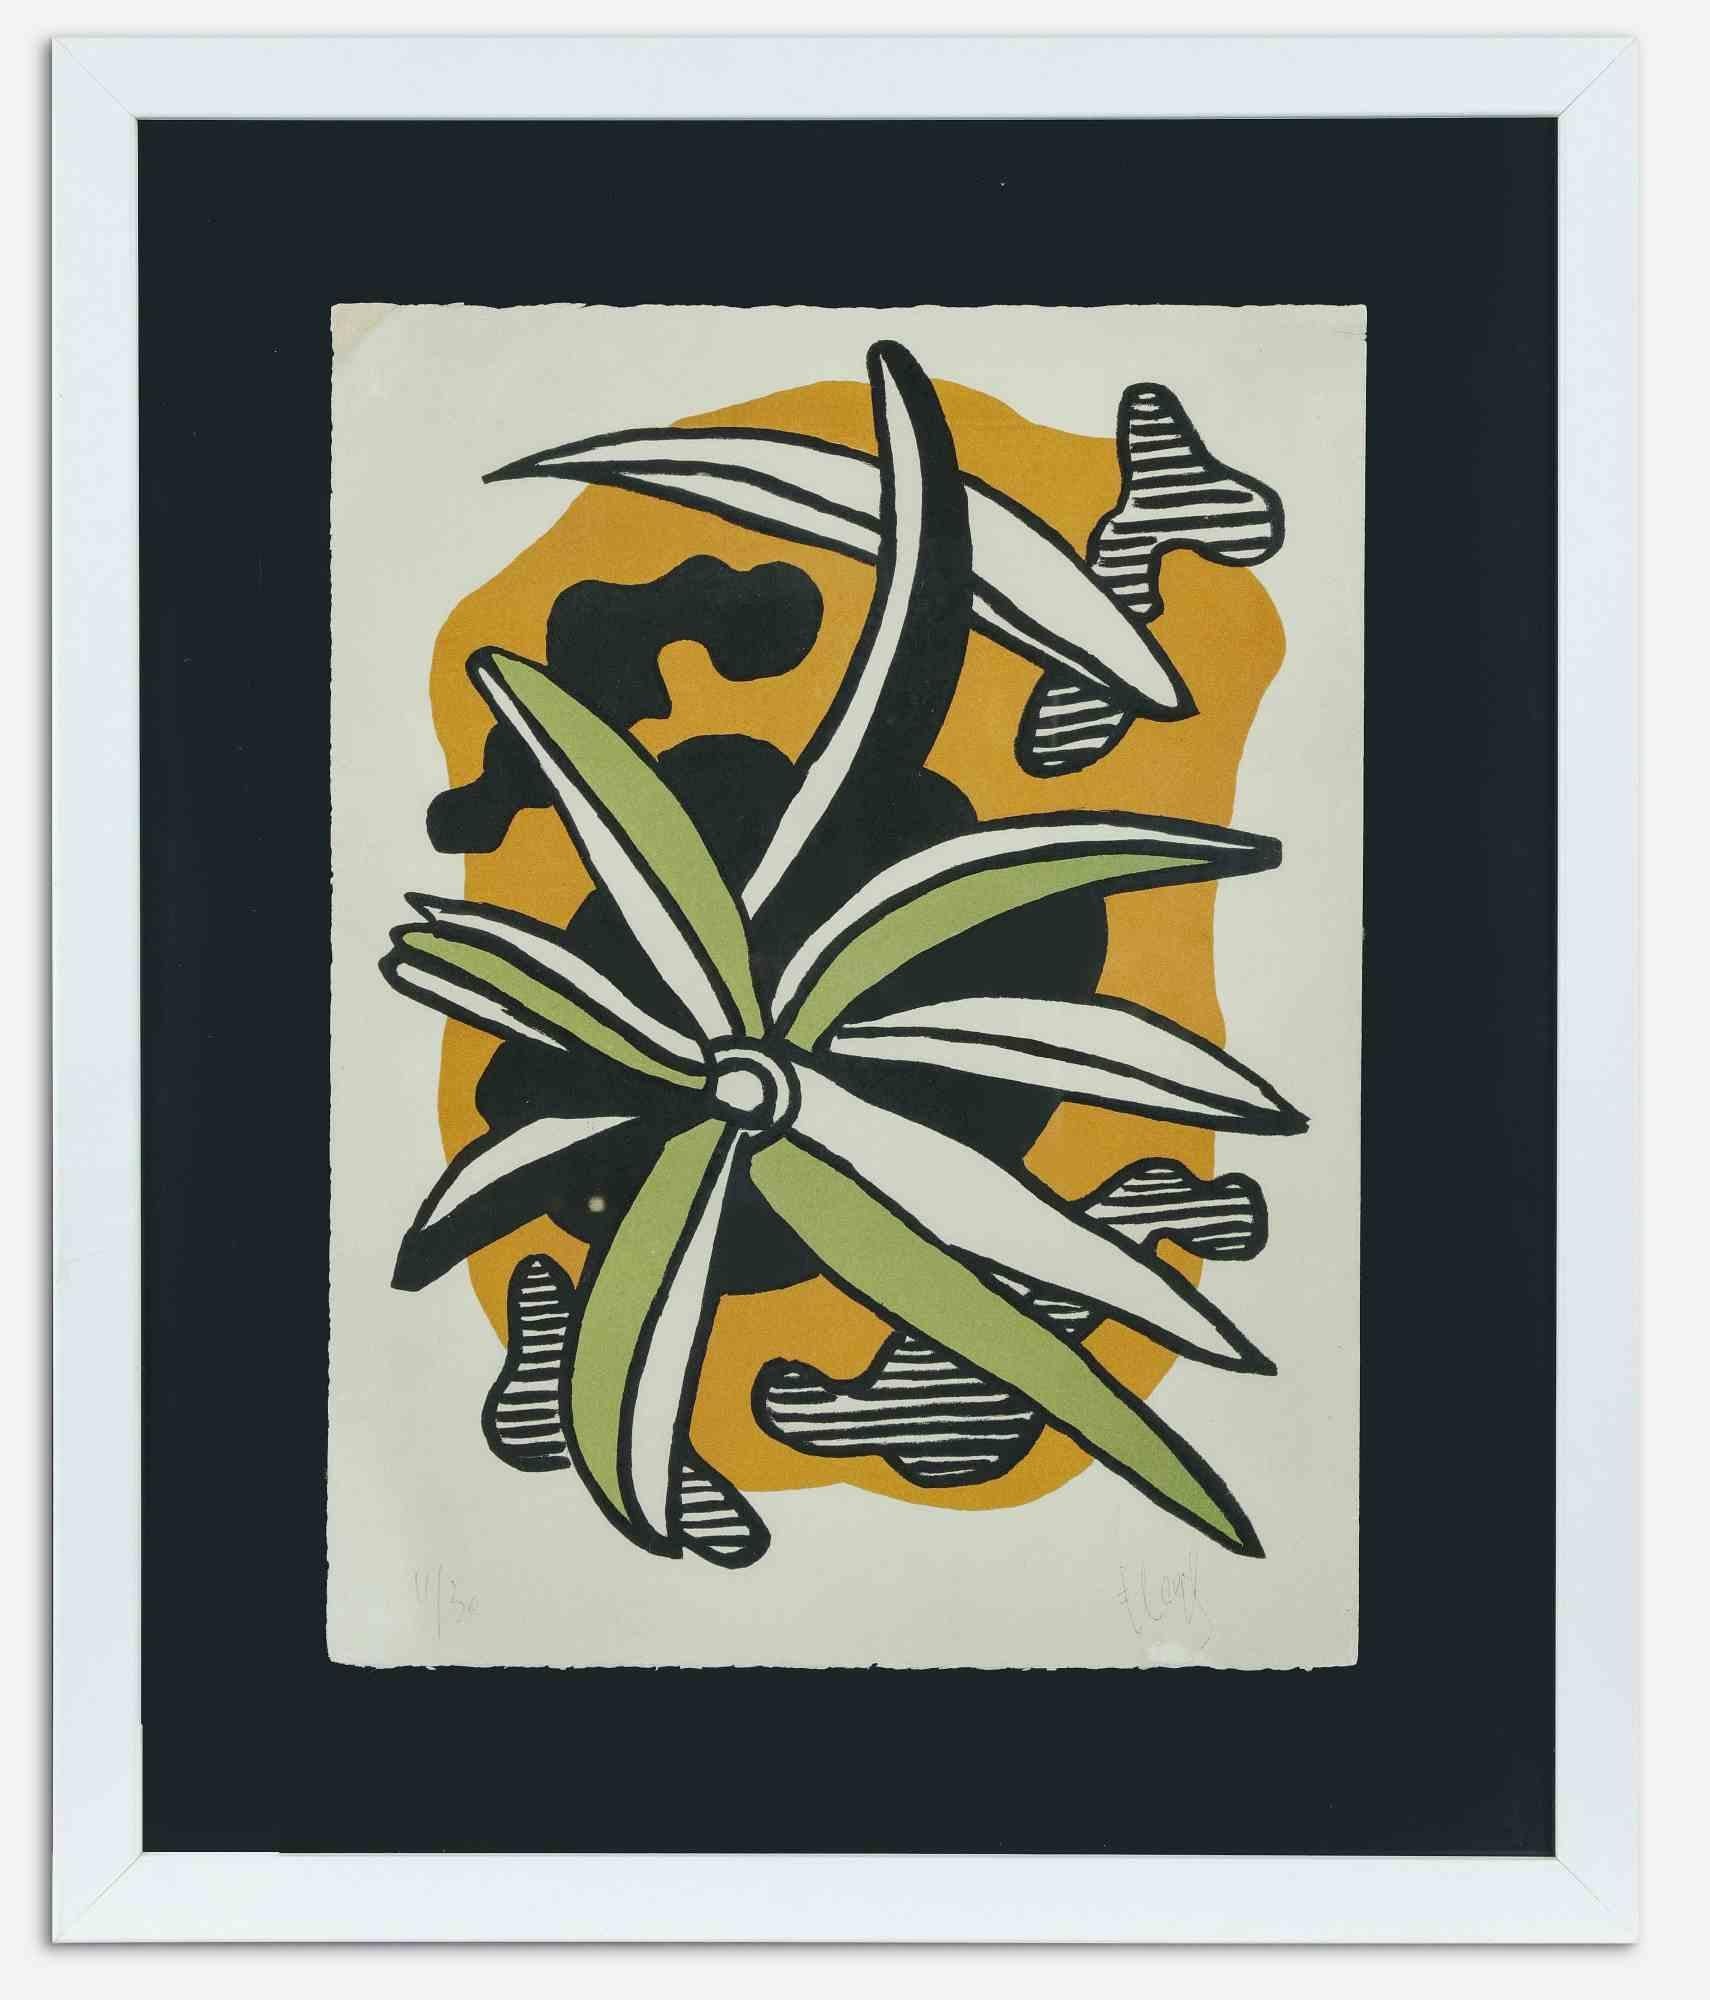 Fleur est une œuvre d'art contemporaine originale réalisée par Fernand Leger.

Lithographie en couleurs mélangées.

Signé à la main et numéroté dans la marge inférieure.

Edition du 30/11

Référence : Catalogue Bluemoon Gallery, p. 194,